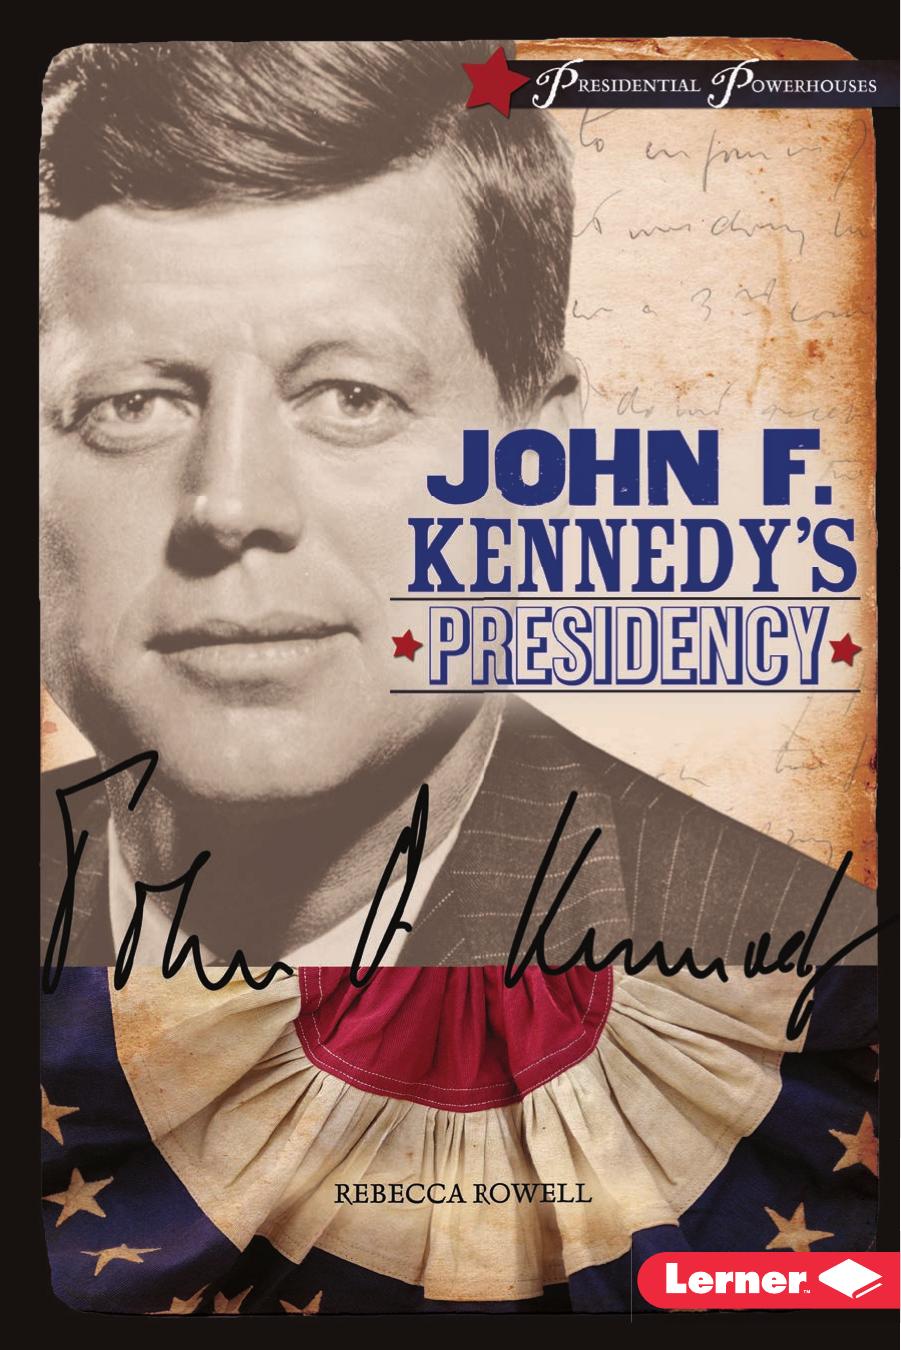 John F. Kennedy's Presidency by Rebecca Rowell